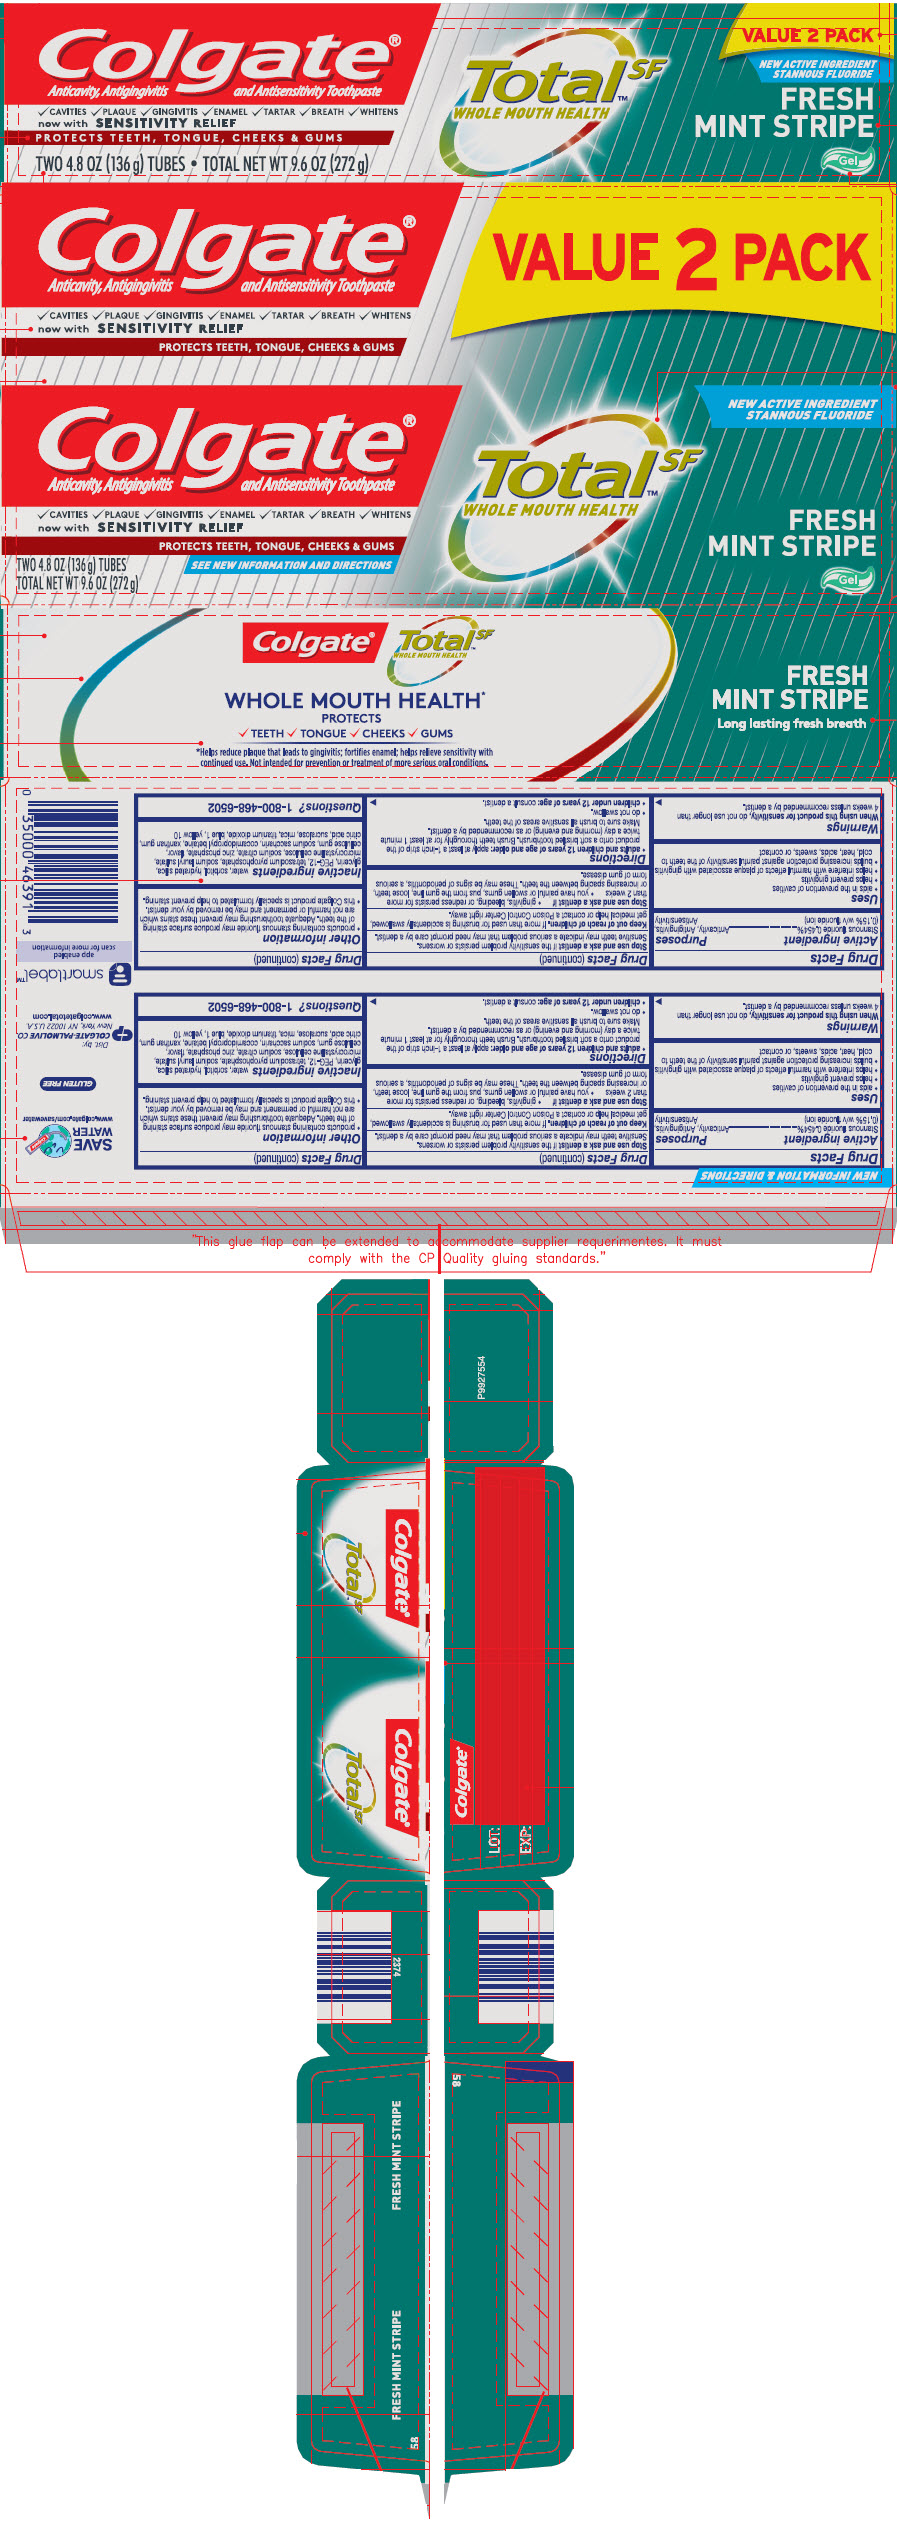 PRINCIPAL DISPLAY PANEL - 2 Tube Carton